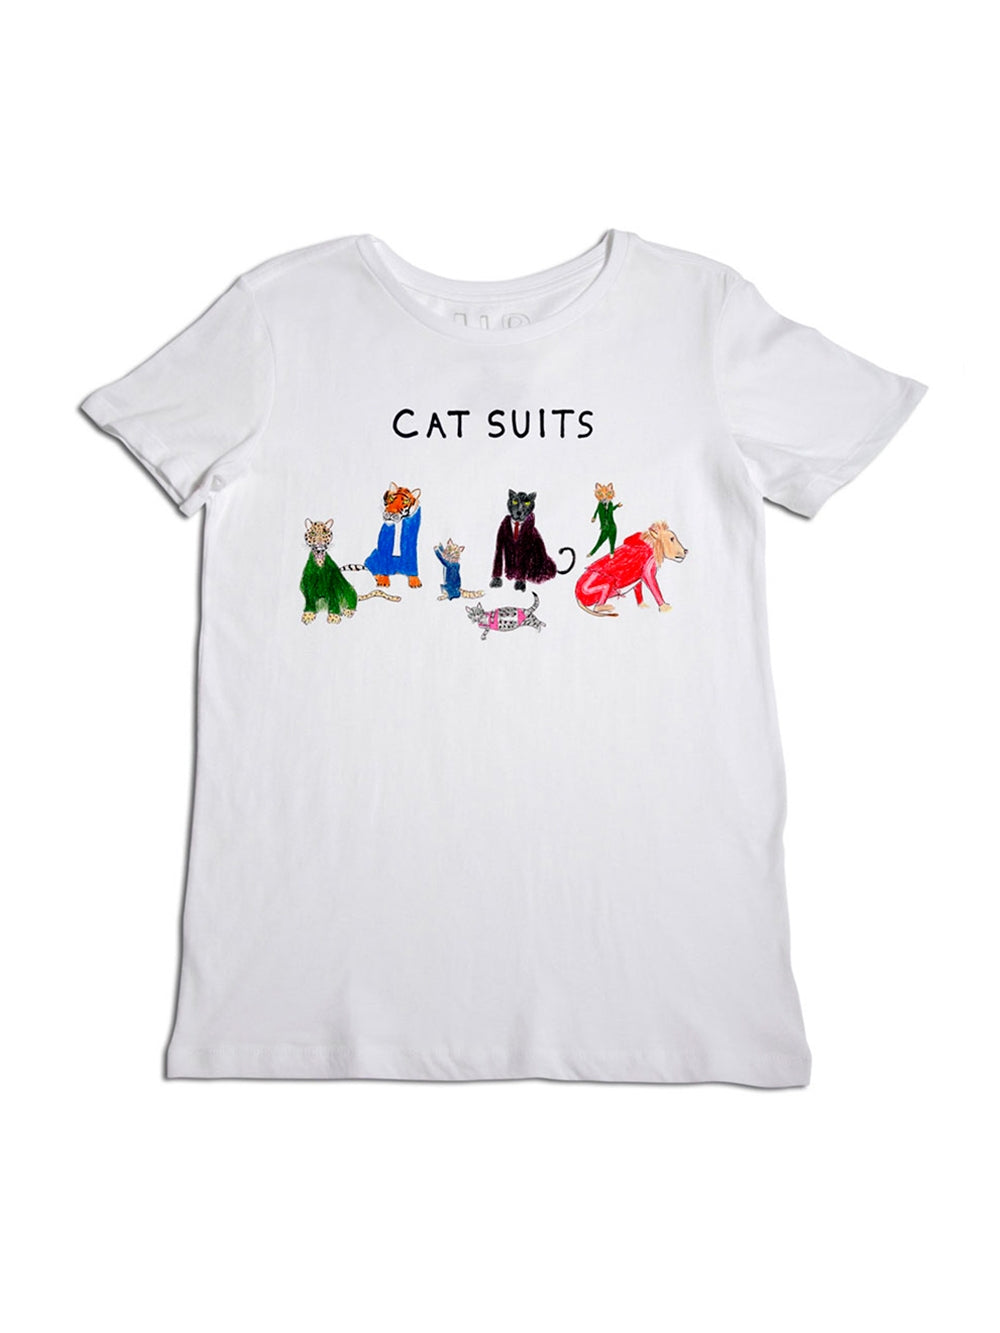 CAT SUITS TEE SHIRT